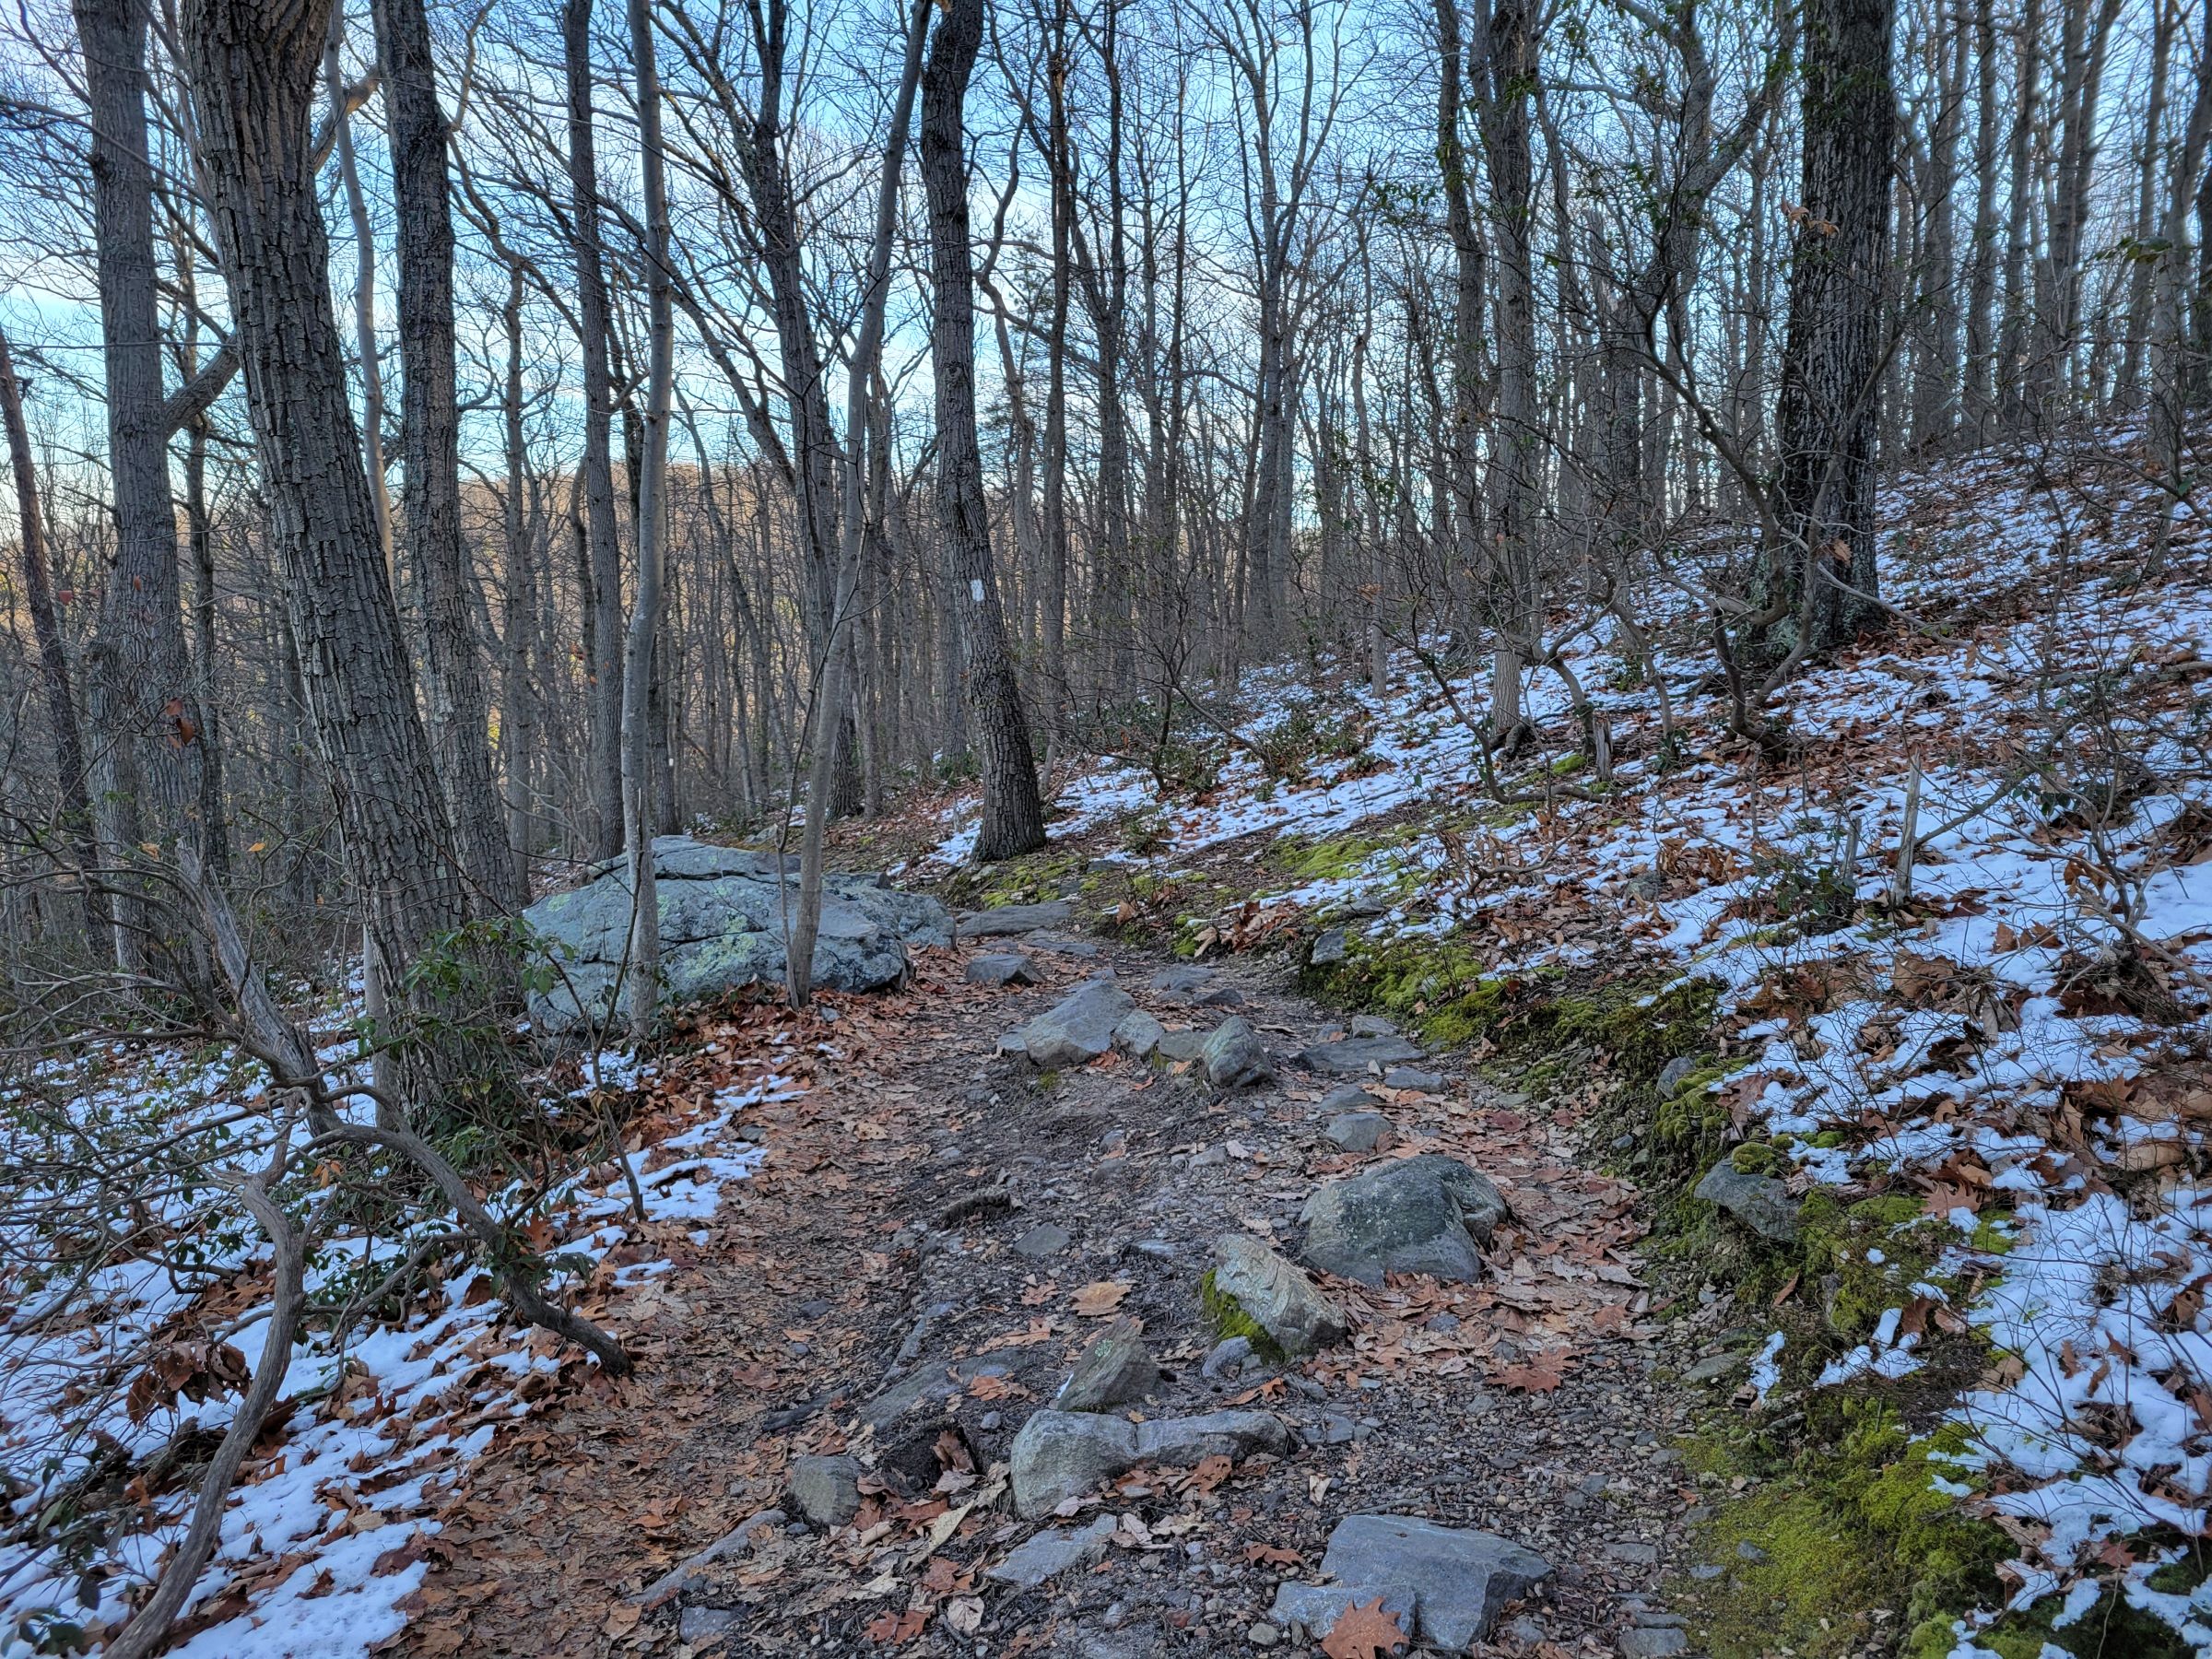 애팔래치안 트레일(Appalachian Trail)을 따라 등산으로 주경계를 넘어 찾아간 레이븐락(Raven Rocks)